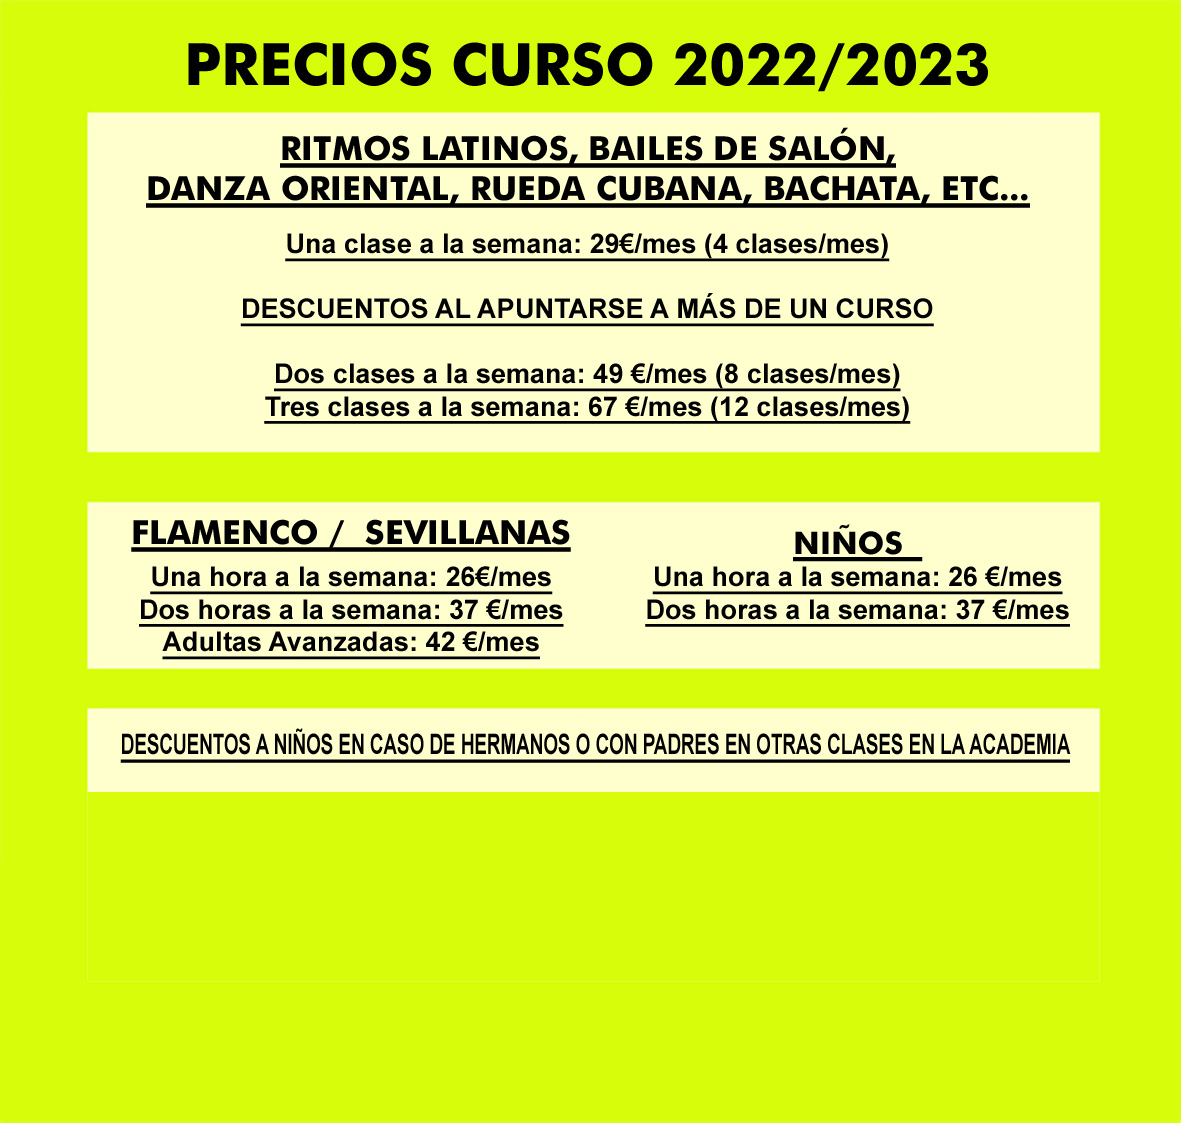 Precios_clases 2022-23 copia